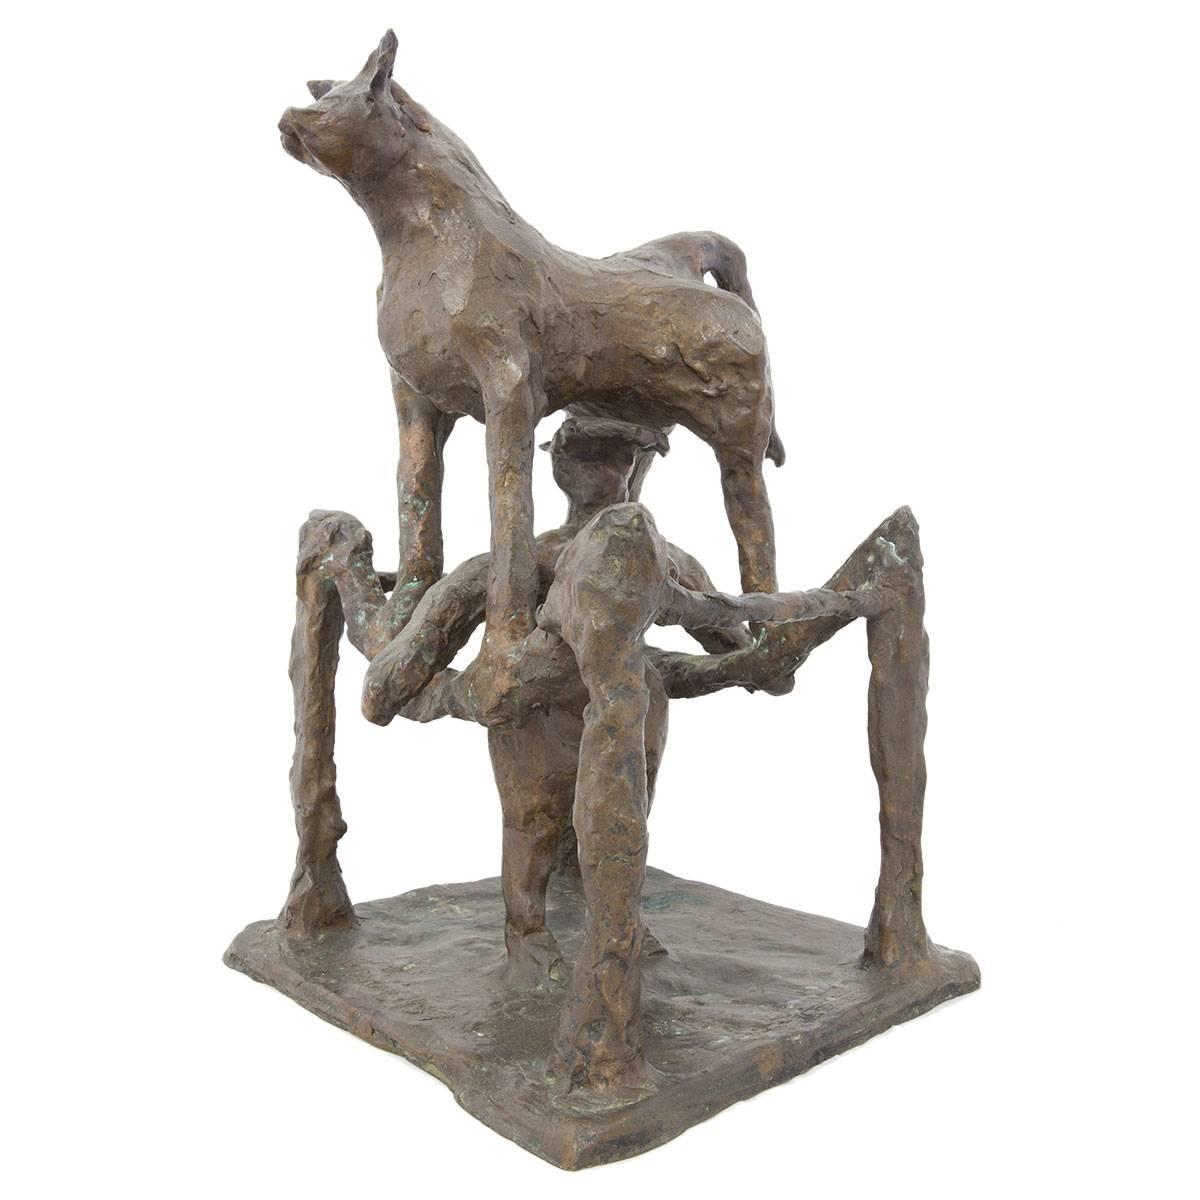 modern bronze sculpture artists